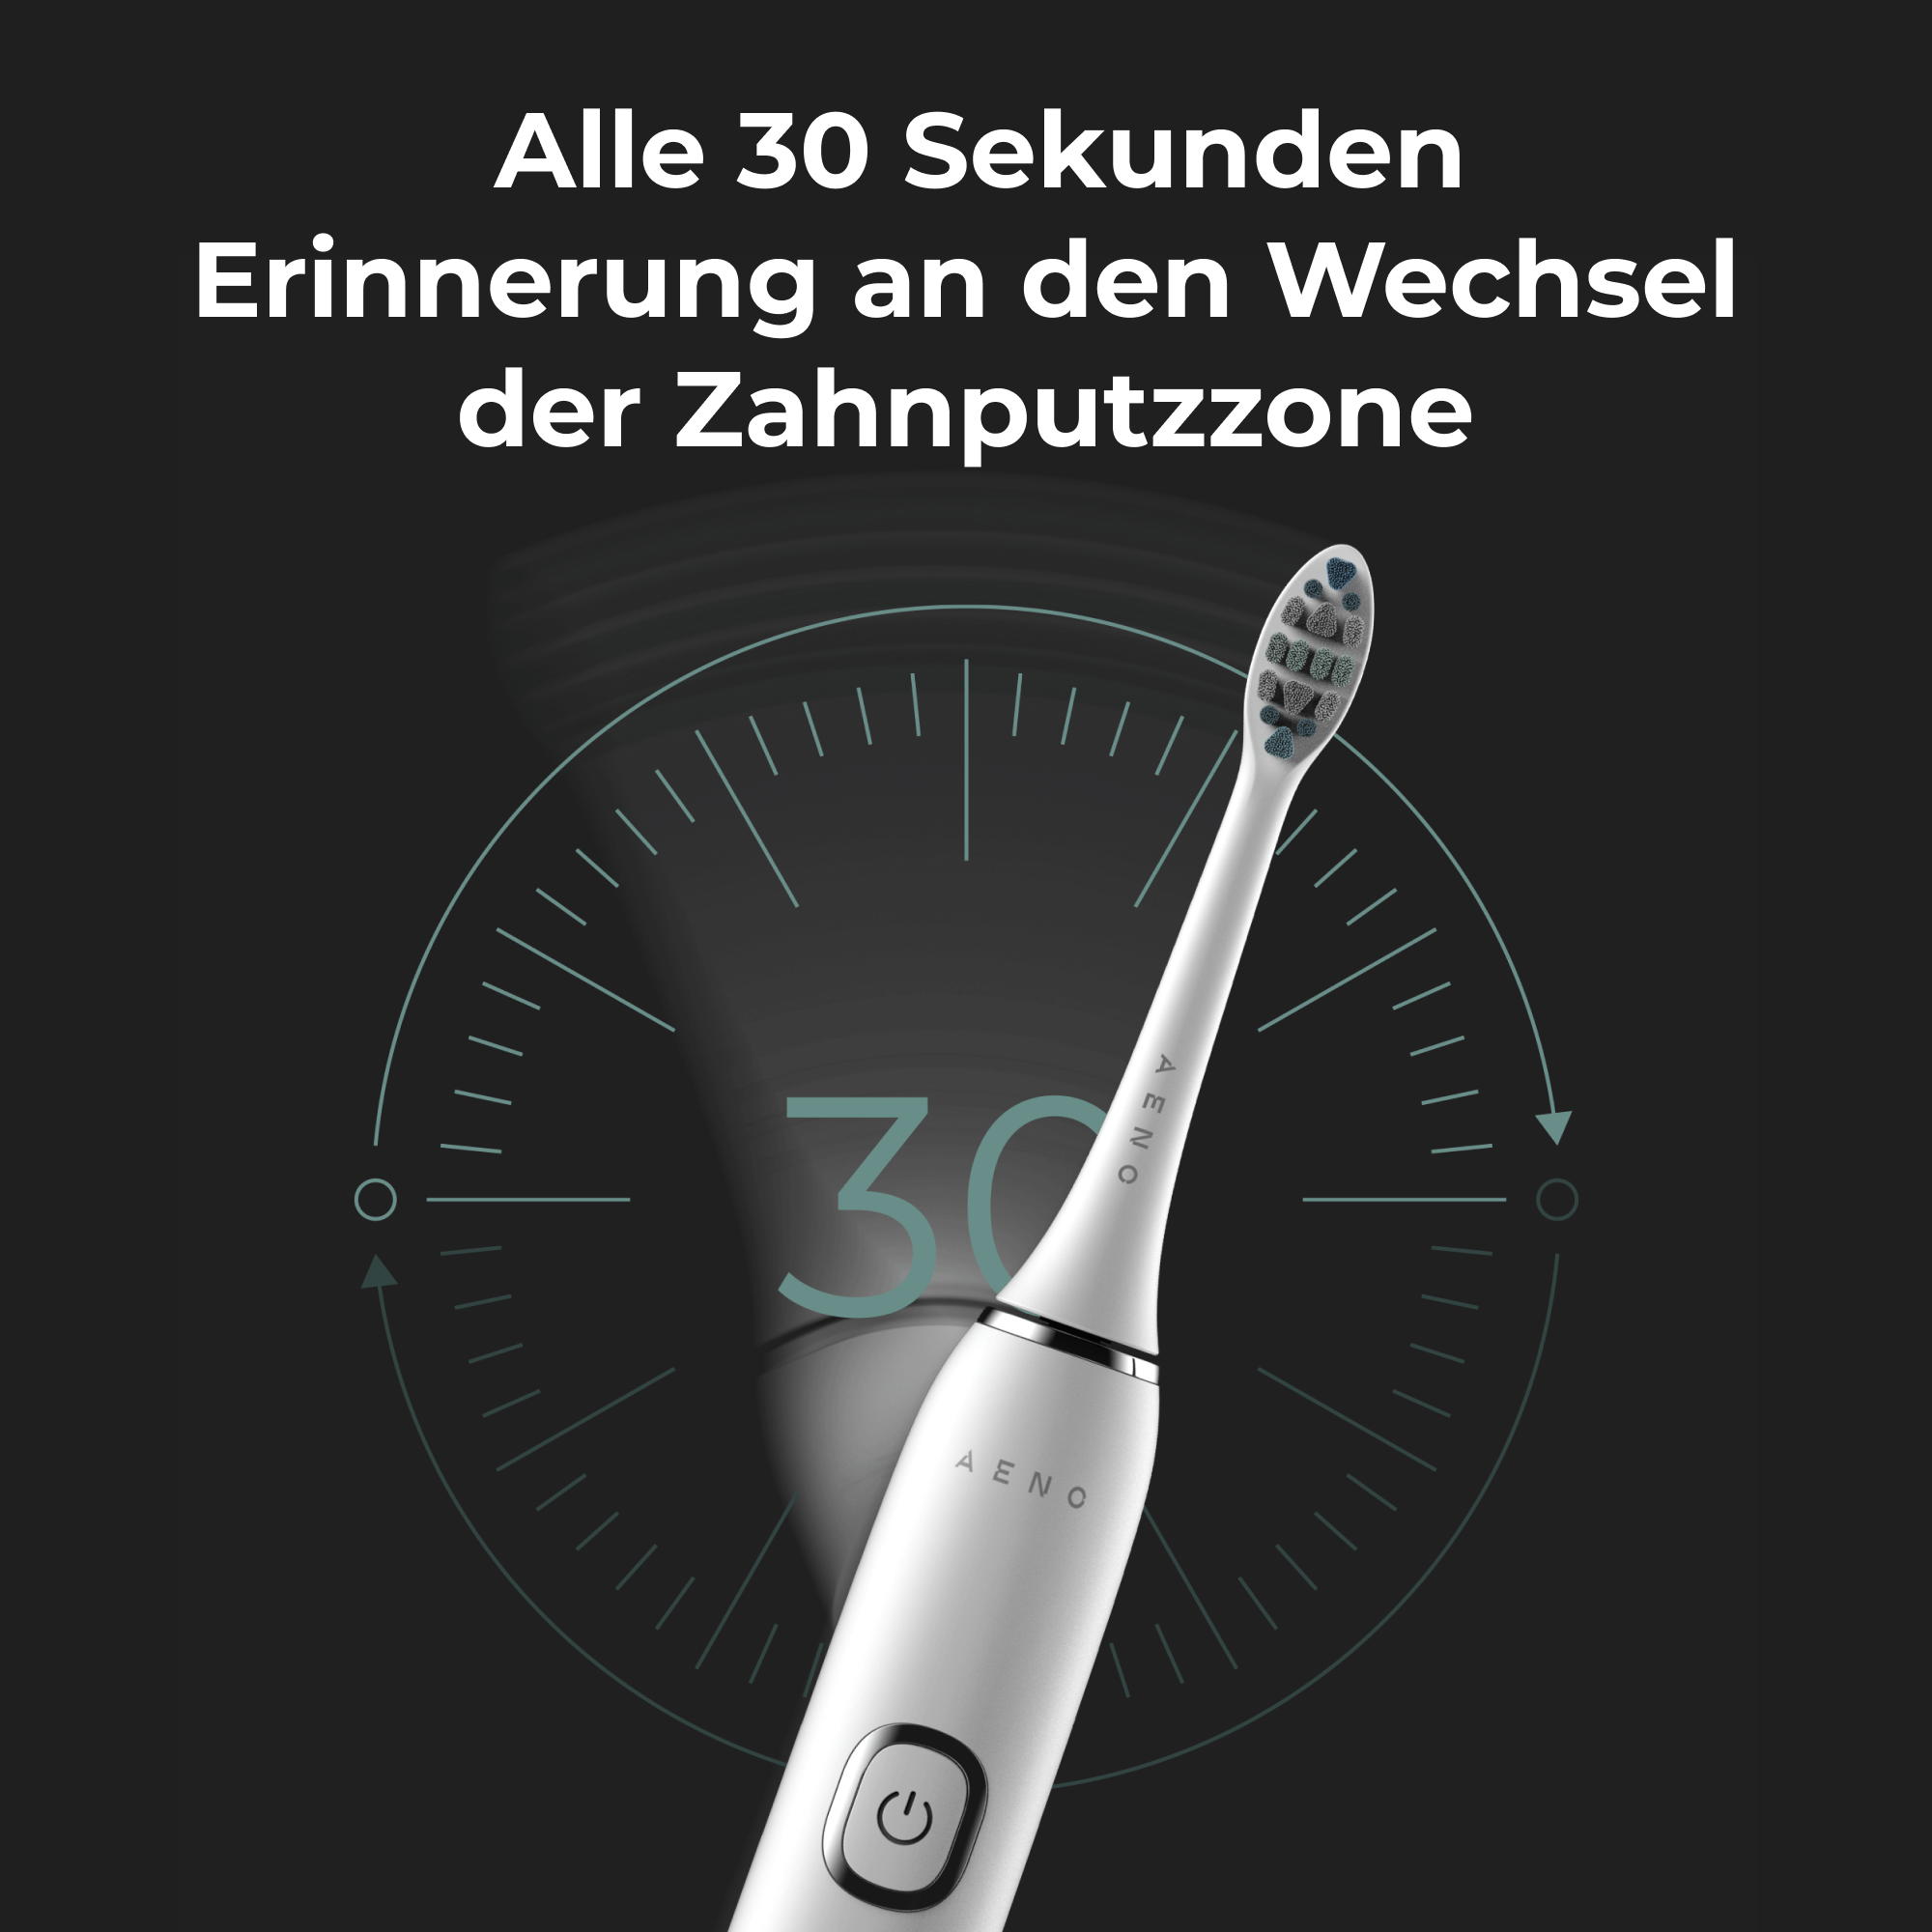 AENO Elektrische kabelloses Schwarz, 46000 3D-Touch, Laden, Elektrische Zahnbürste U/min, IPX7 Szenarien, 9 Zahnbürste Weiß DB4, mit